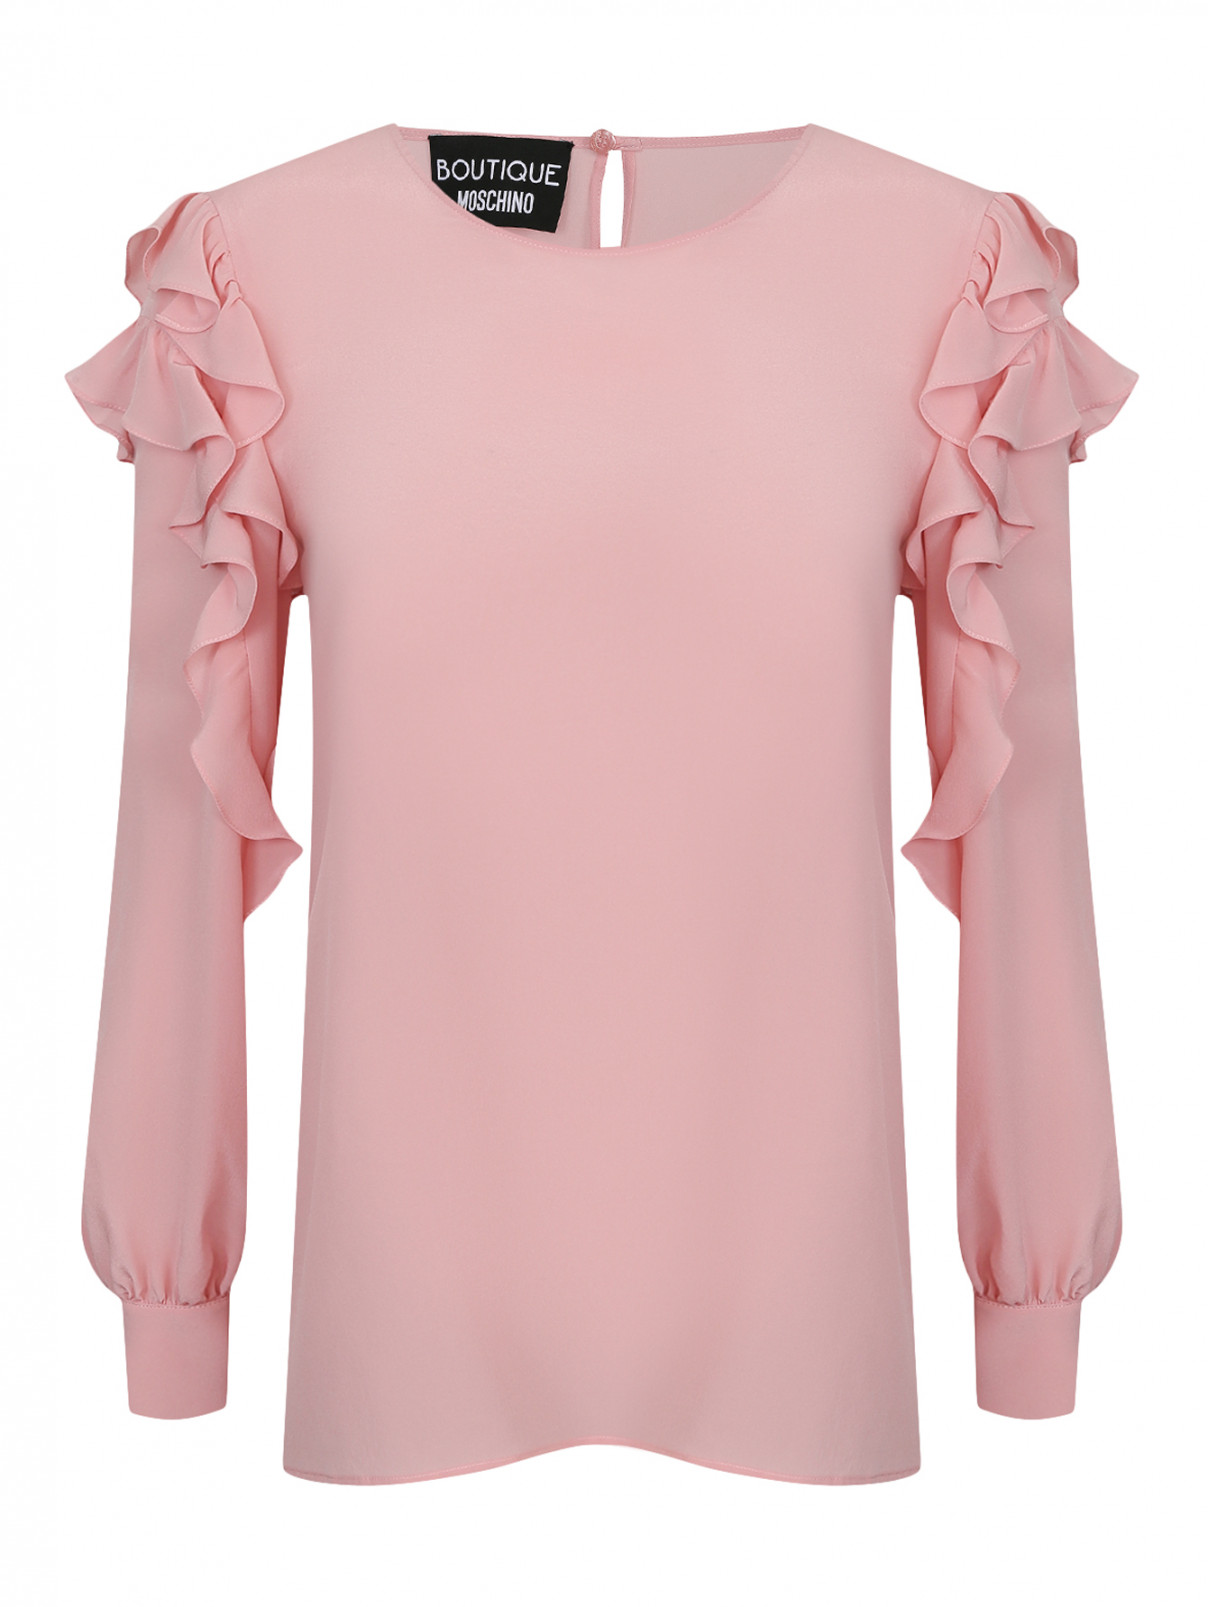 Блуза из шелка Moschino Boutique  –  Общий вид  – Цвет:  Розовый